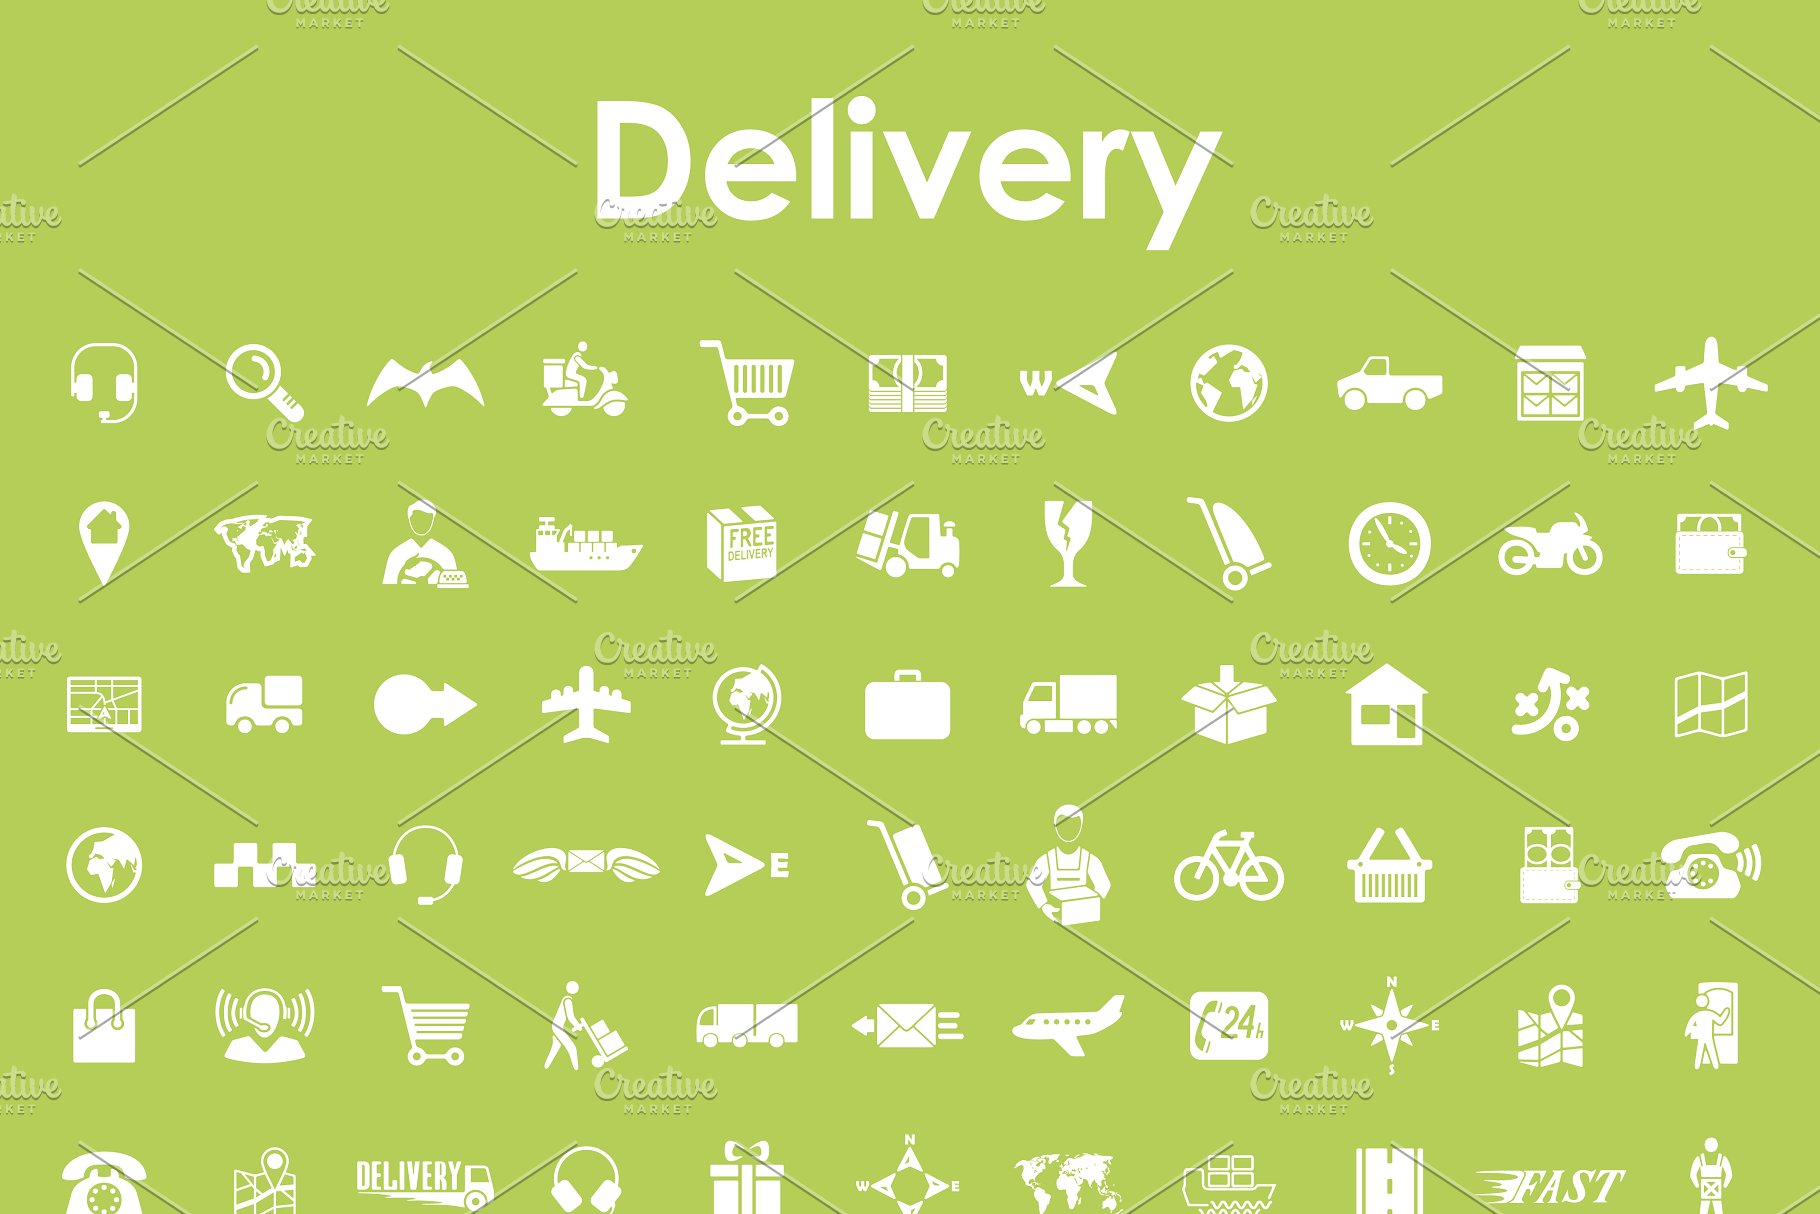 运输相关的图标 Set of delivery icons